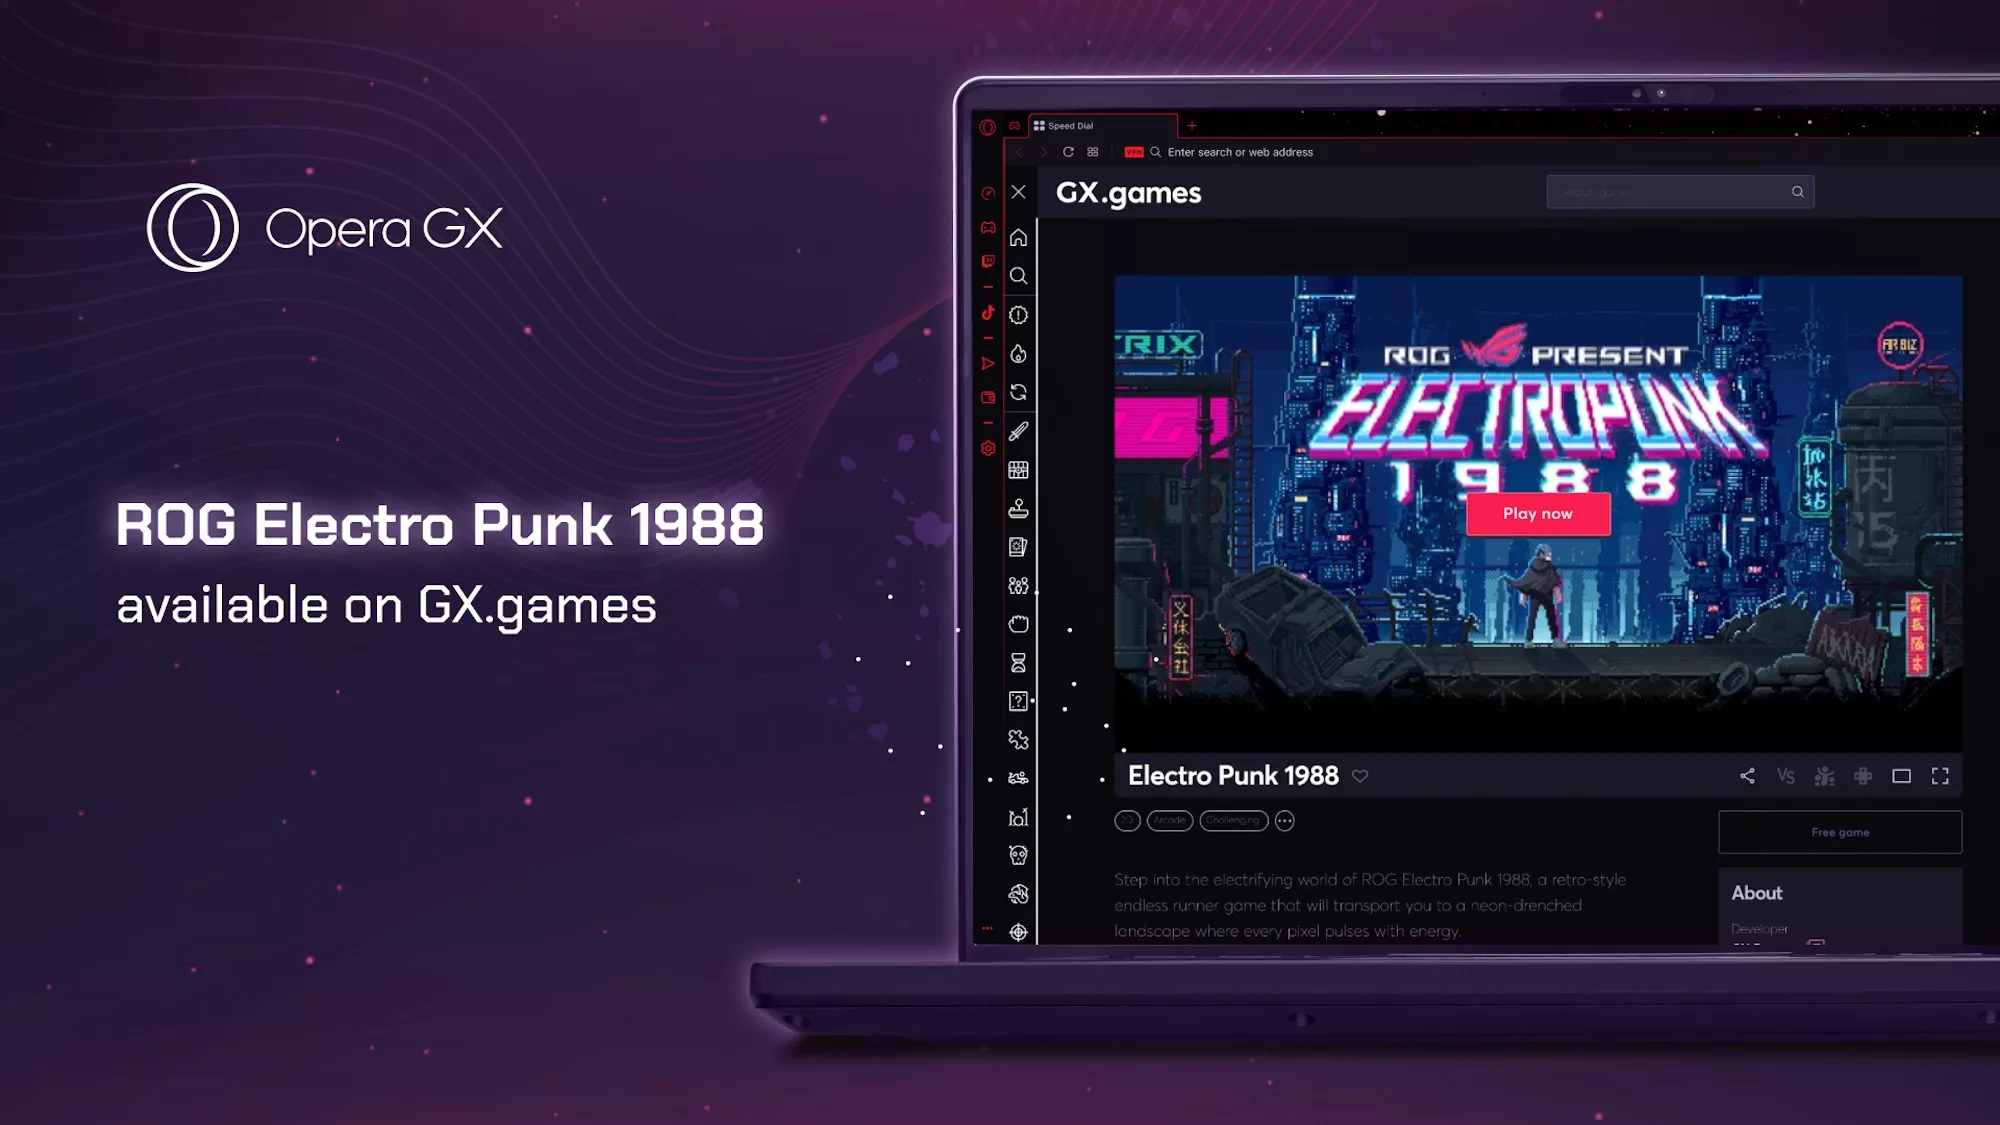 Инфографика, показывающая, что игра ROG Electro Punk 1988 доступна на сайте gx.games через браузер Opera GX